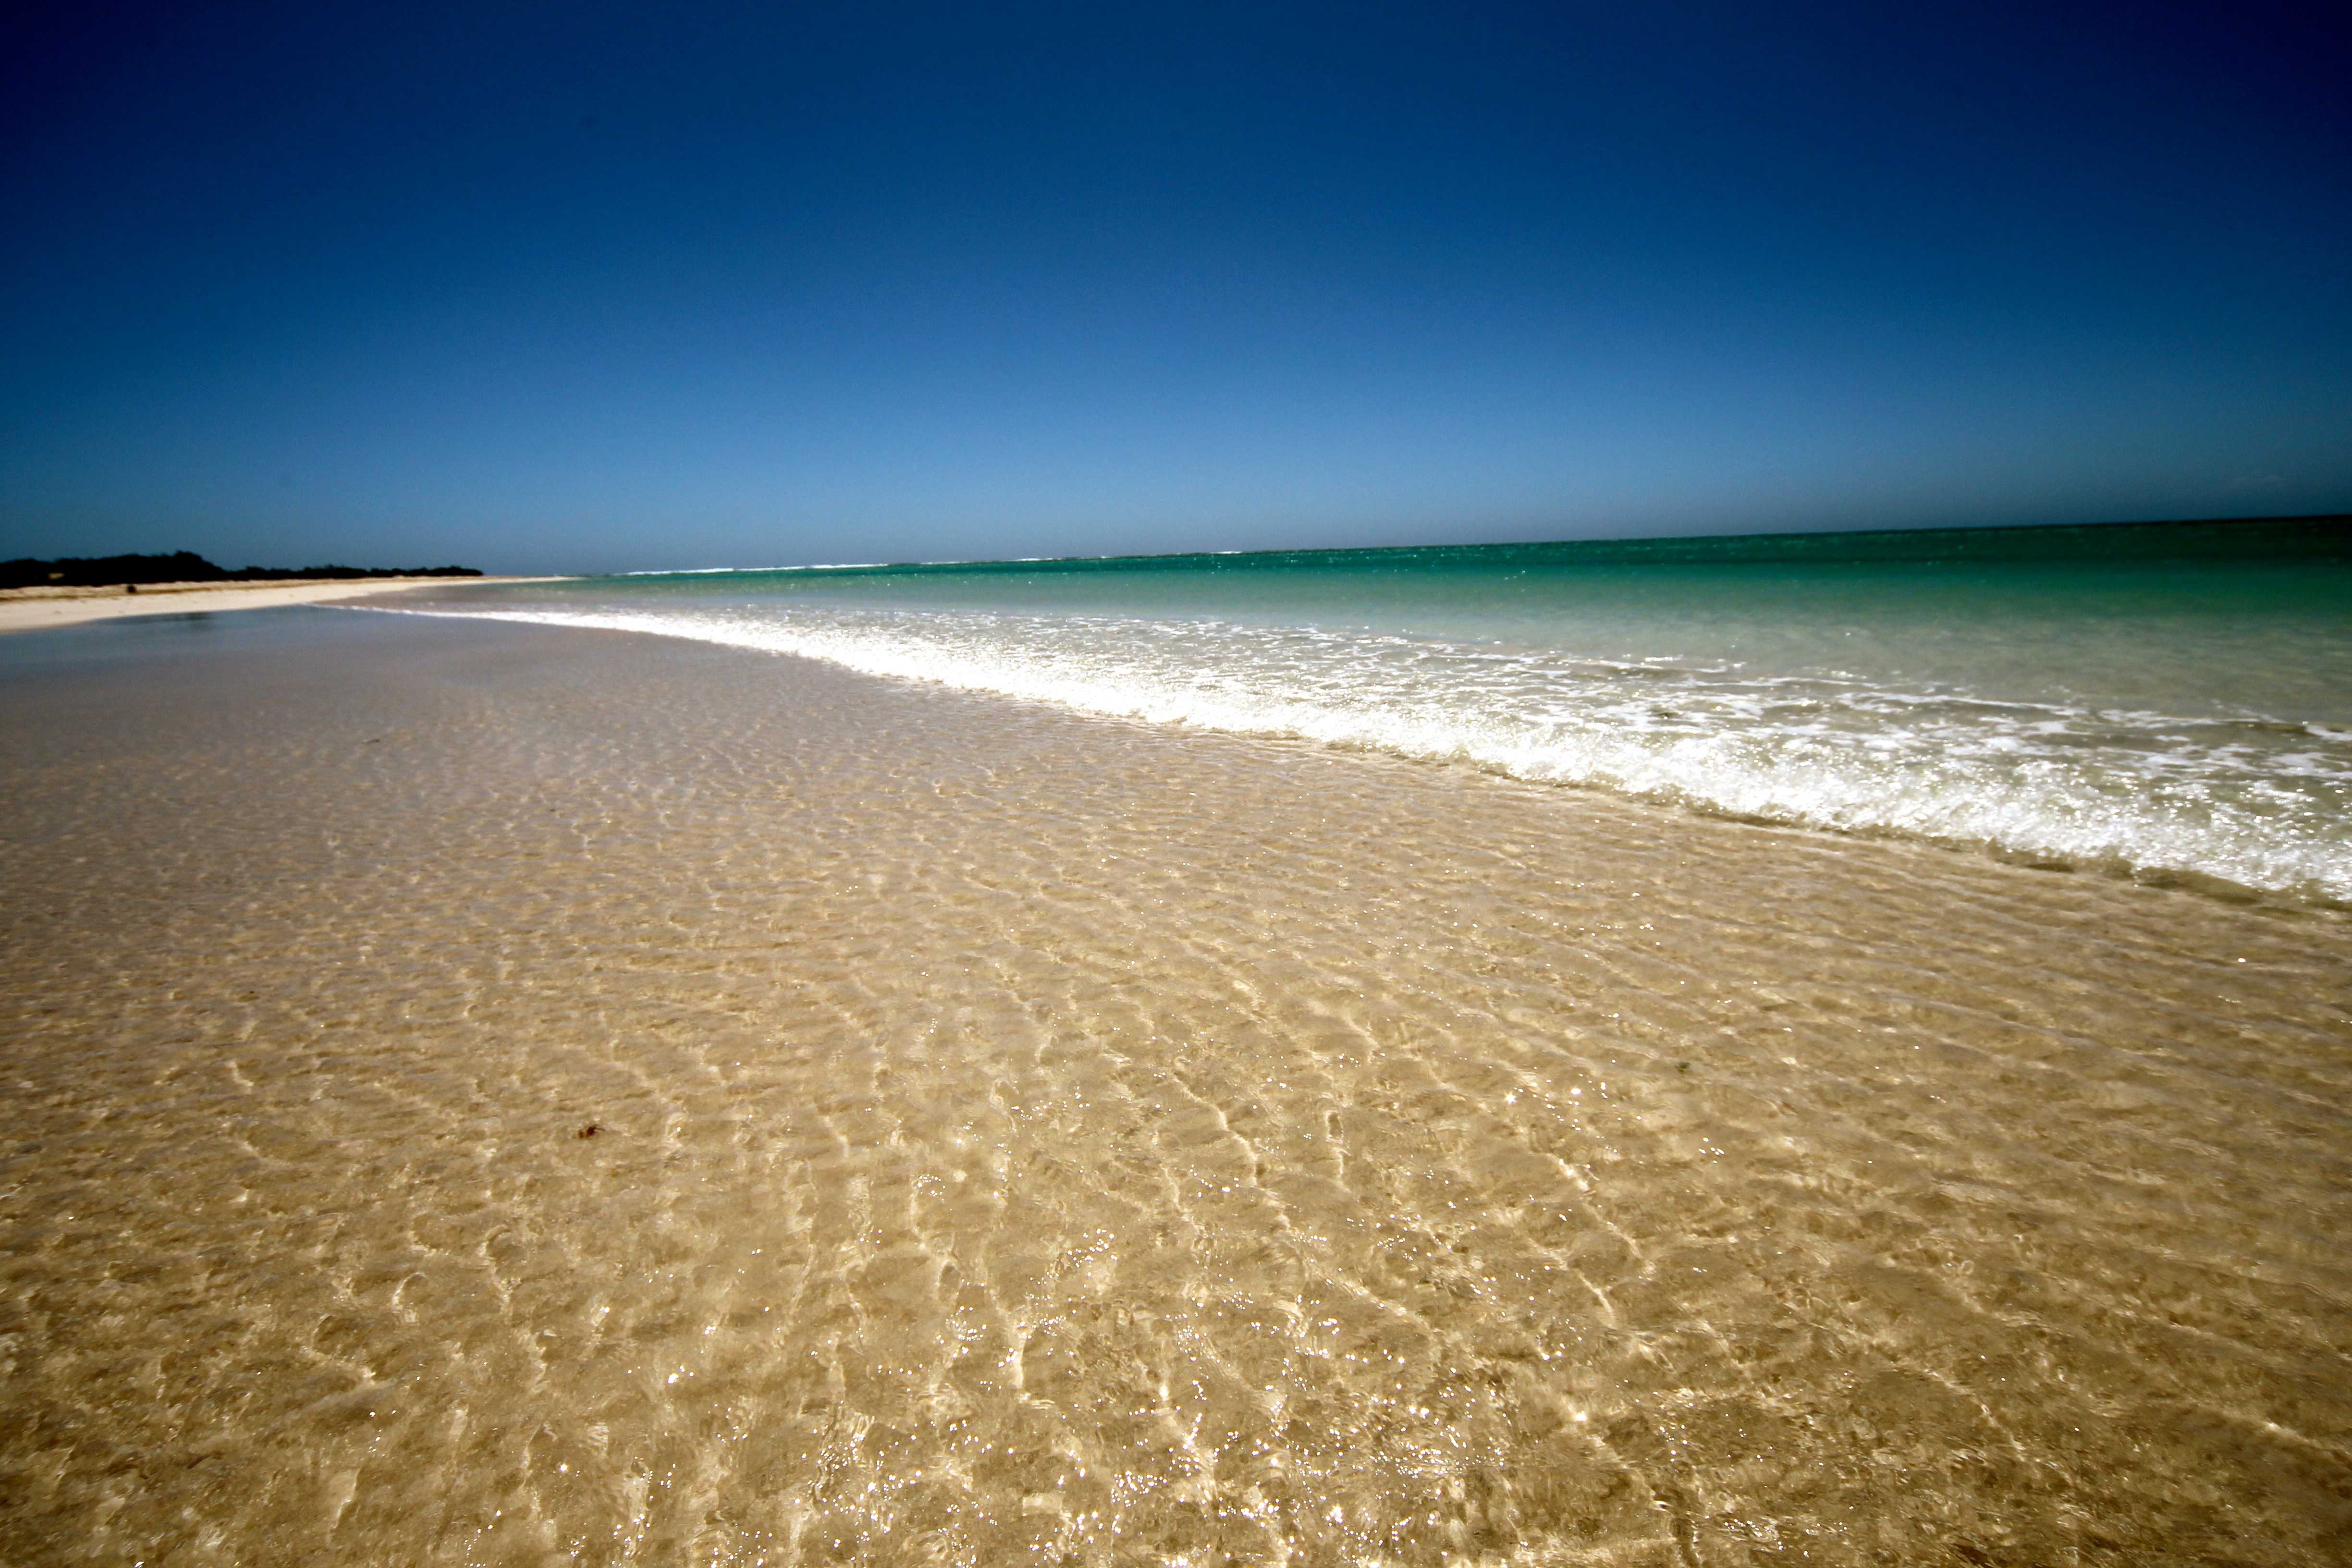 Пляжи крыма для отдыха — фото с названием и описанием [45 пляжей]